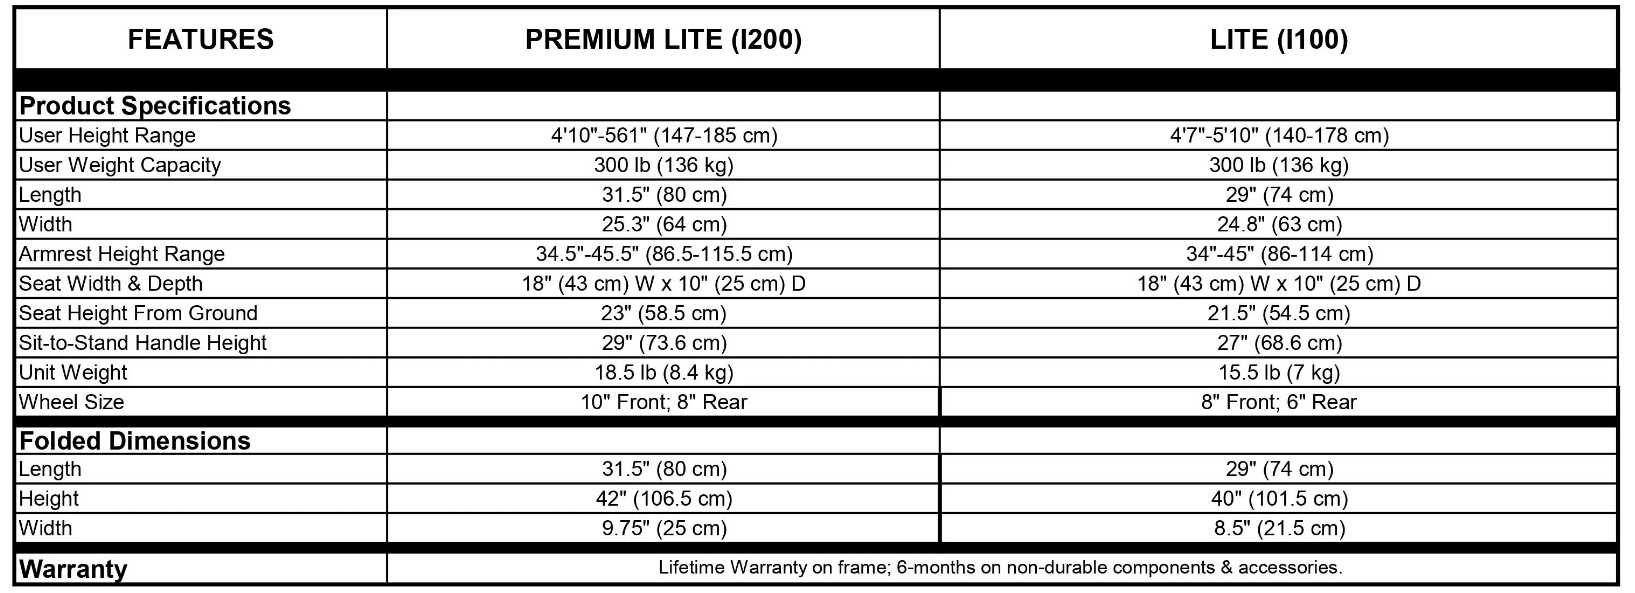 UpWalker Premium Lite 2 vs. Lite Chart 